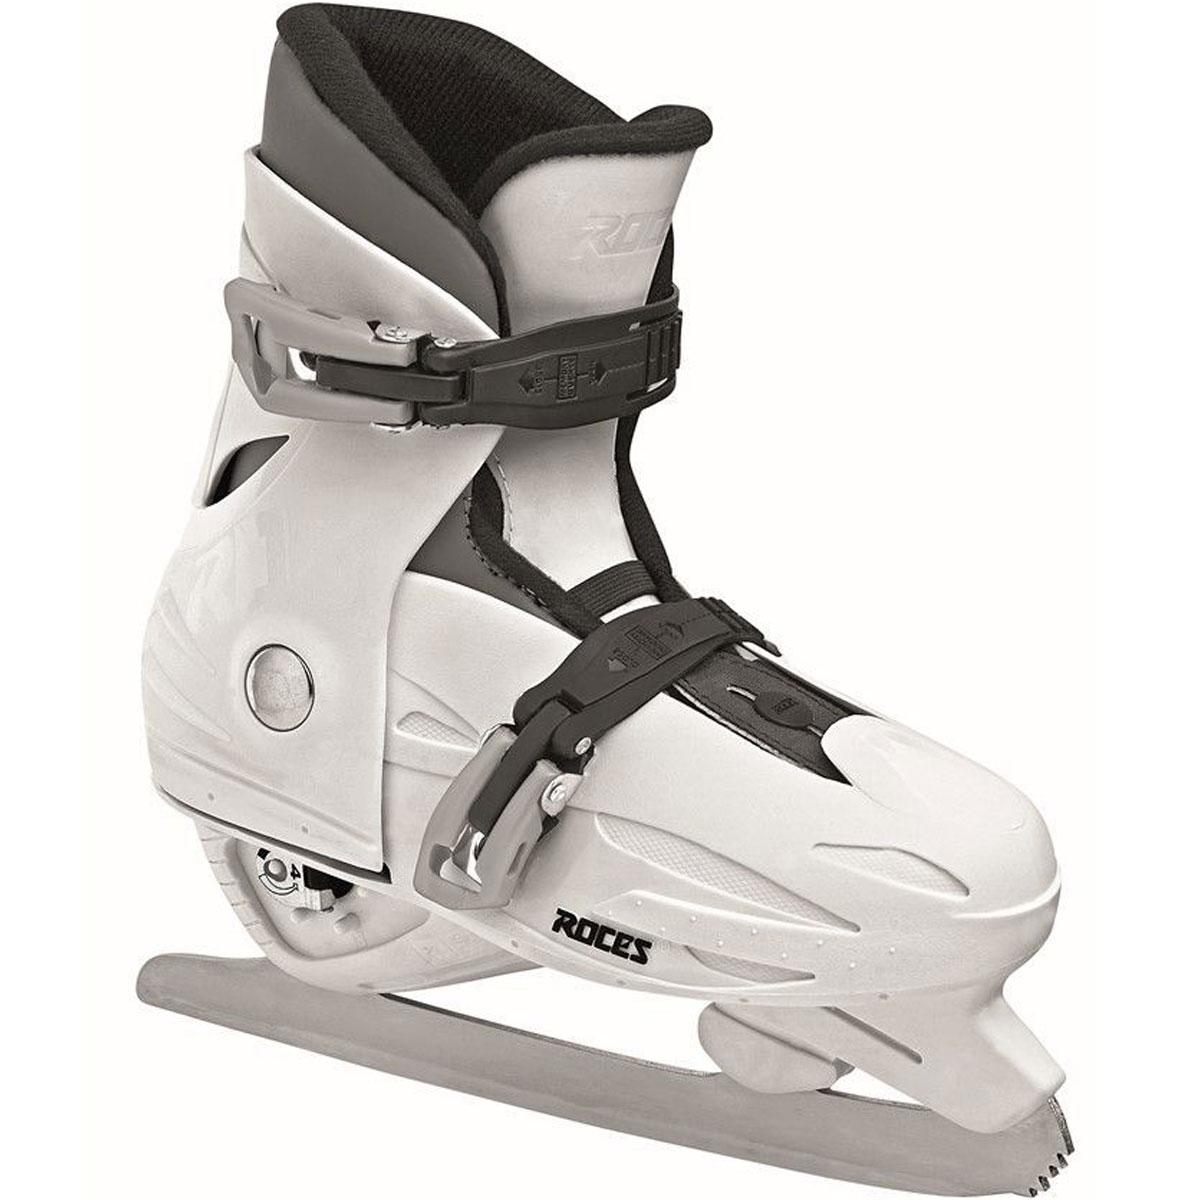 Roces Kids Adjustable Ice Skate MCK II Figure 450519-00002 - image 2 of 5